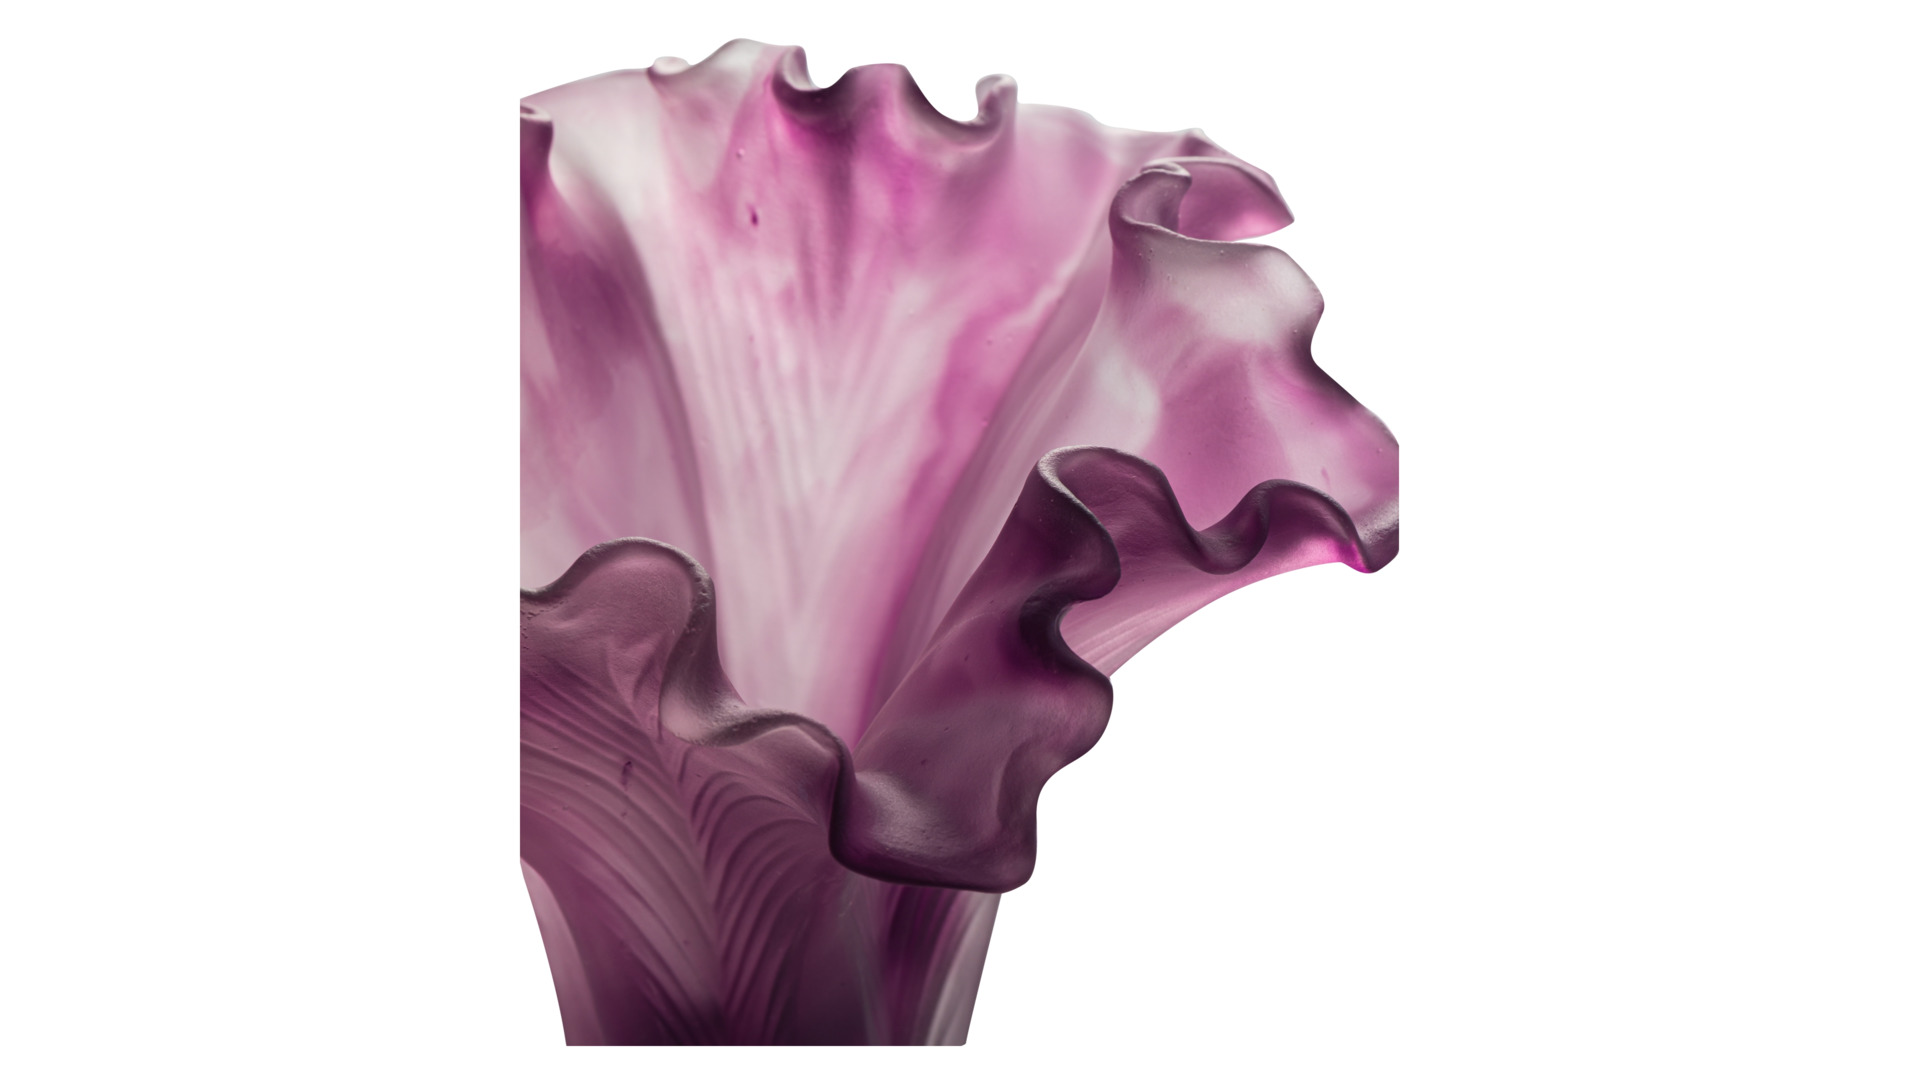 Ваза Cristal de Paris Лист 20 см, пурпурная